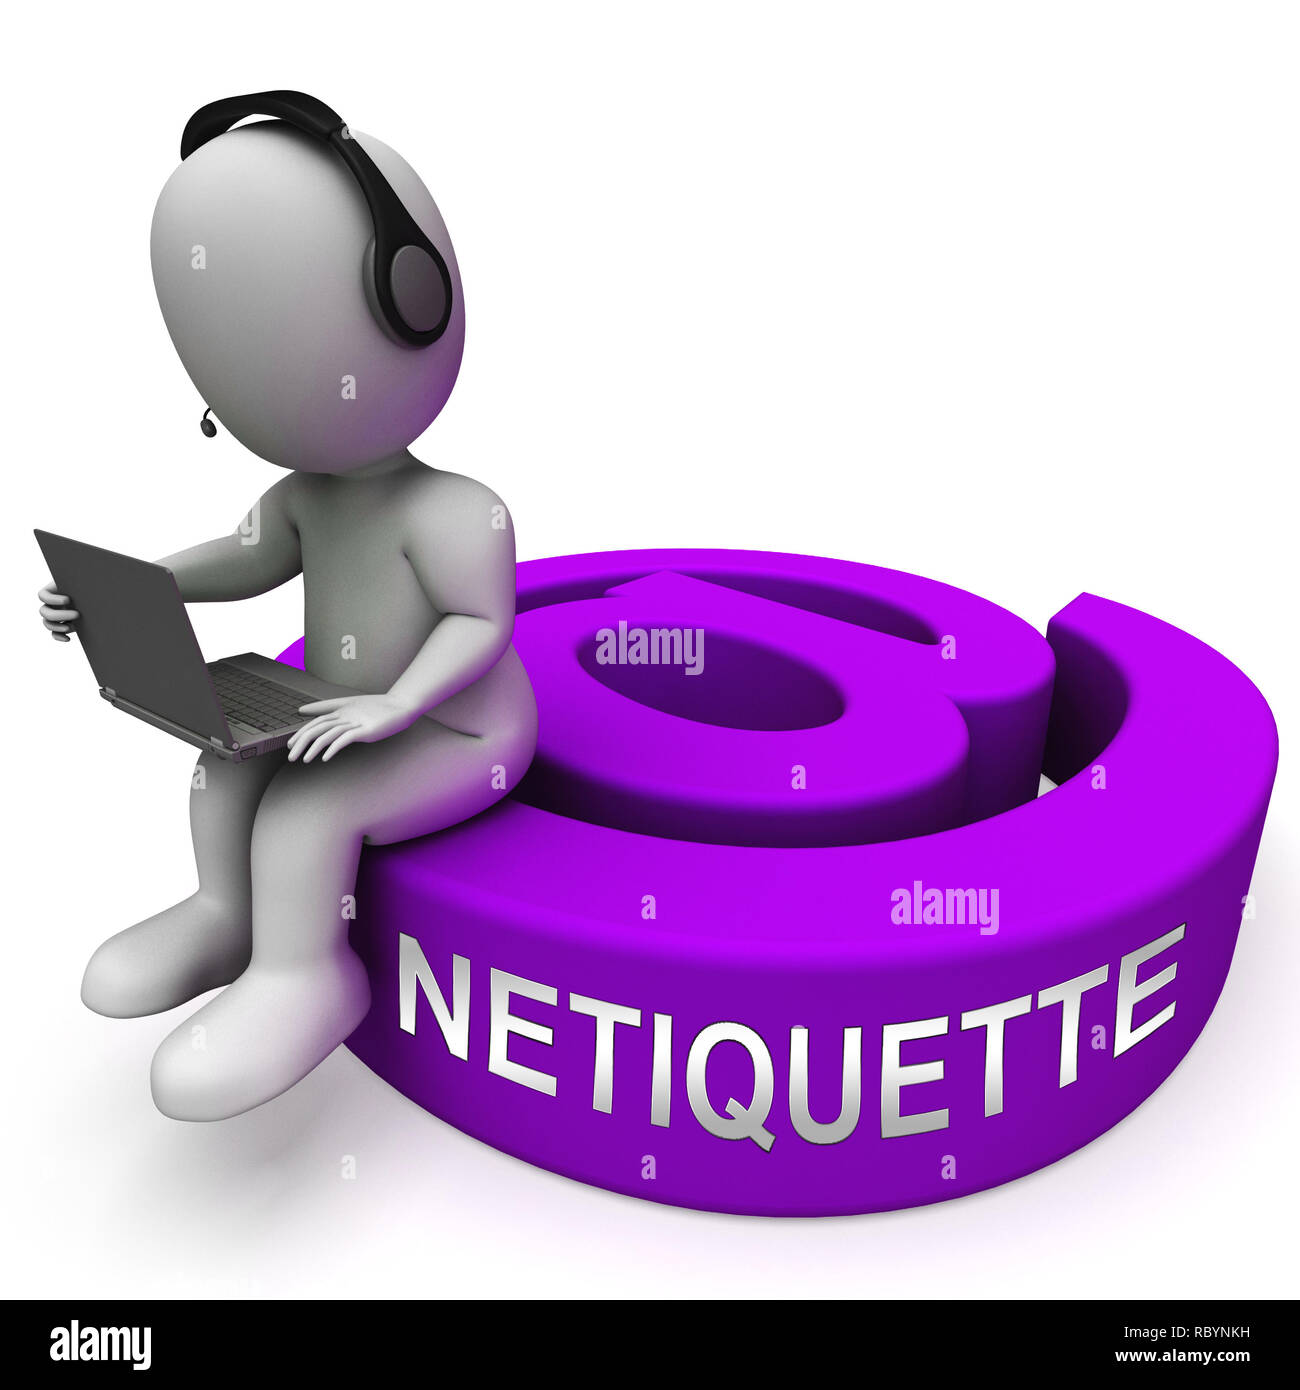 Netiquette Polite Online Behavoir Or Web Etiquette. Civility Protocol On Networks And Tech - 3d Illustration Stock Photo